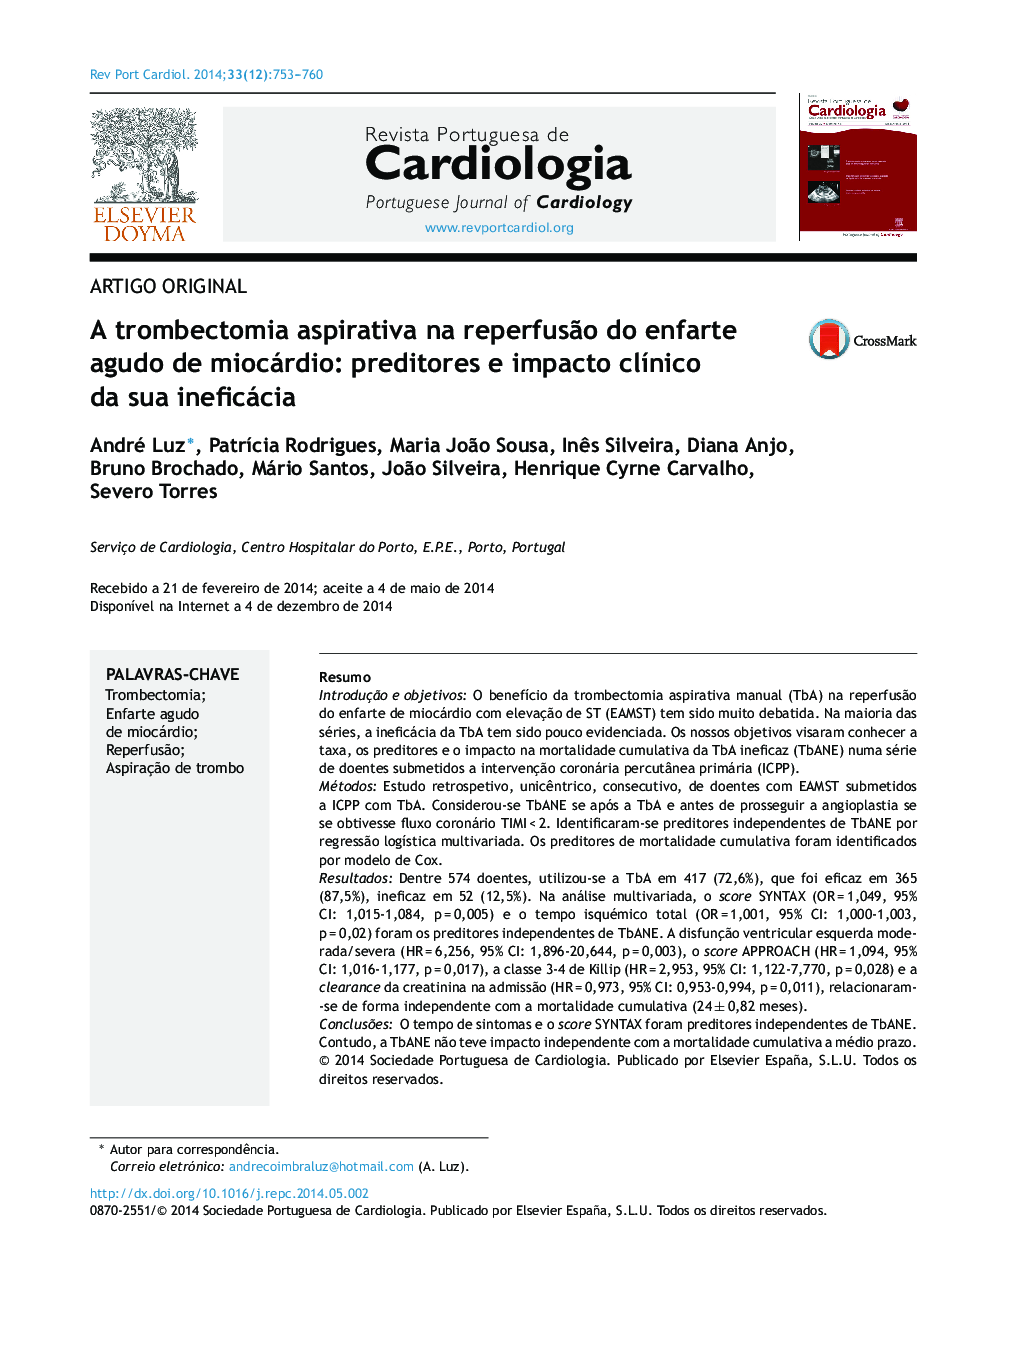 A trombectomia aspirativa na reperfusÃ£o do enfarte agudo de miocárdio: preditores e impacto clÃ­nico da sua ineficácia